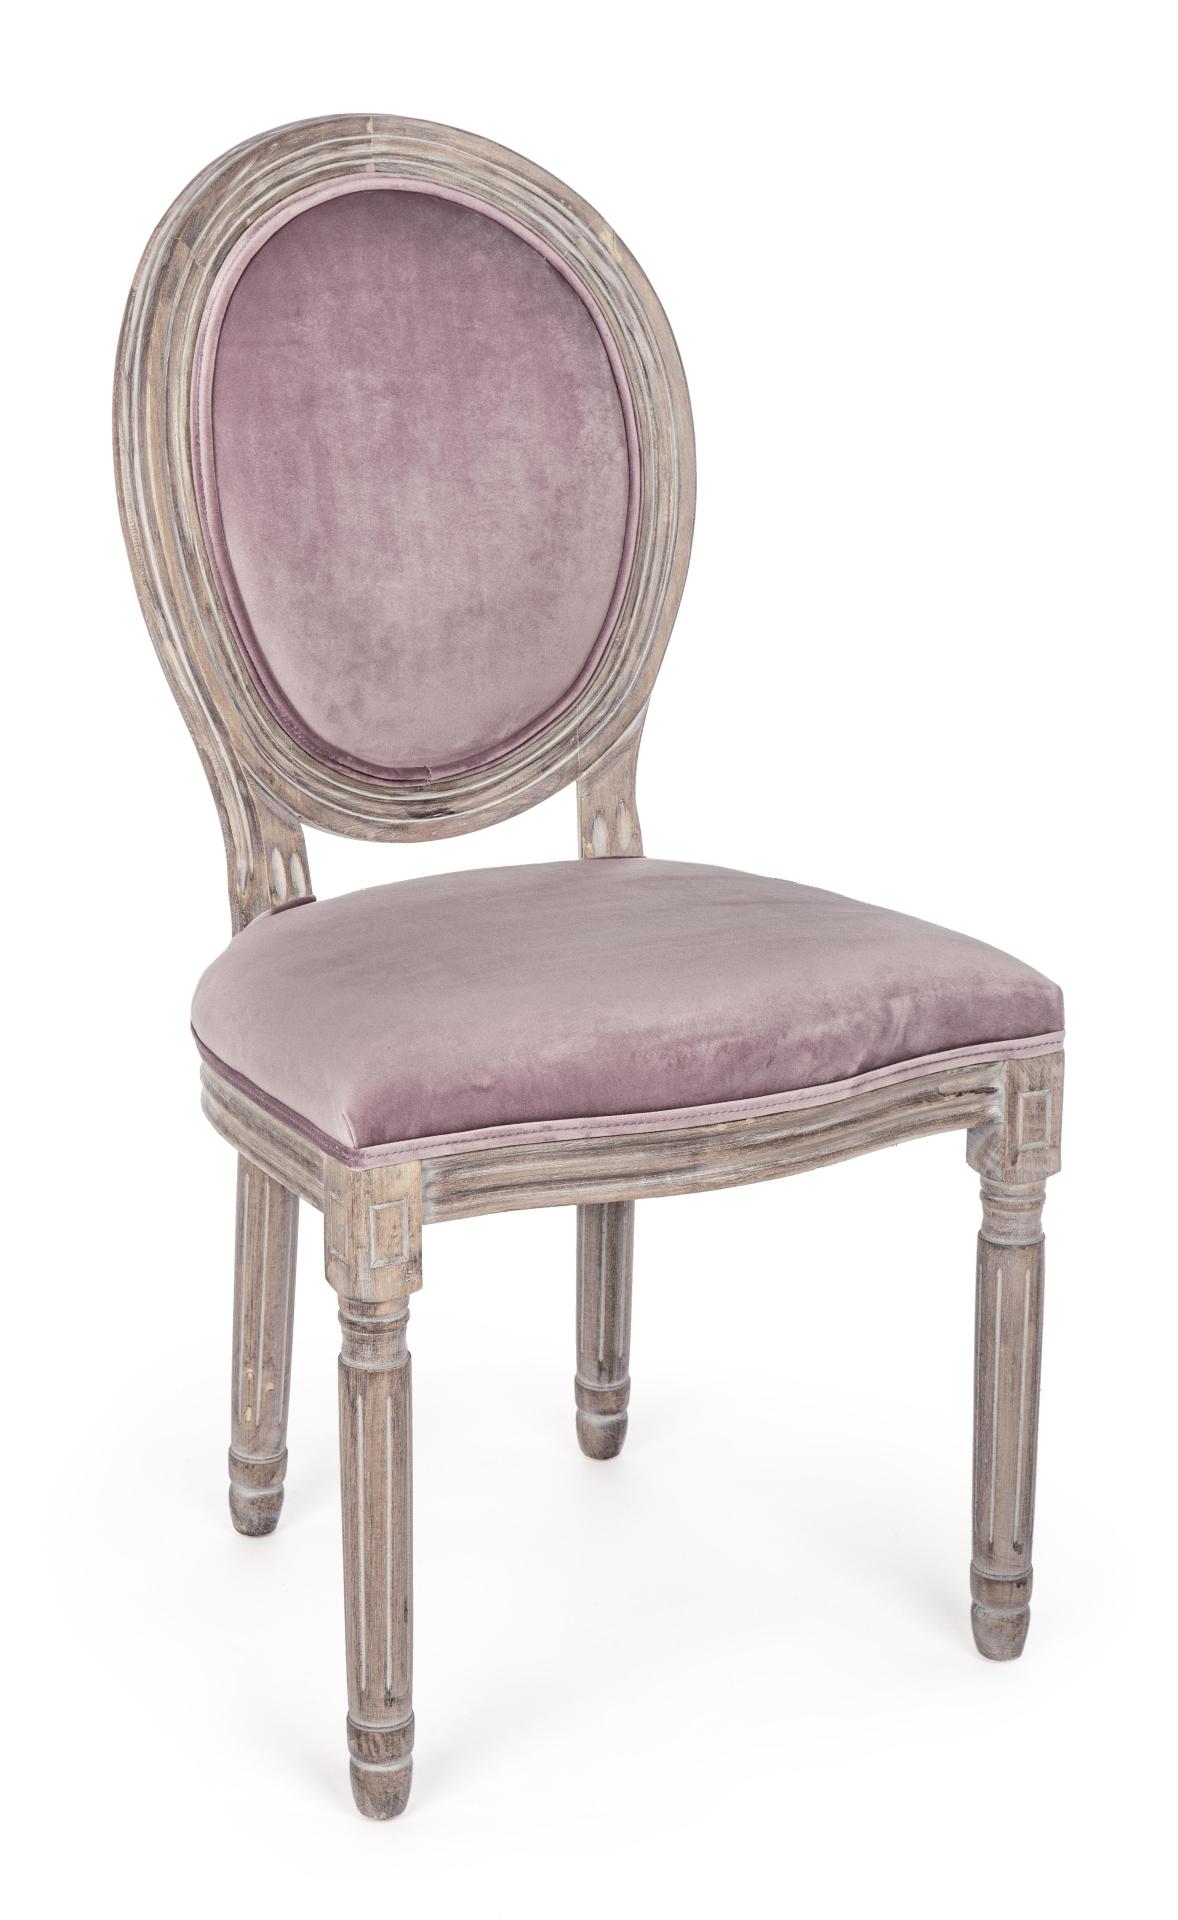 Der Stuhl Mathilde überzeugt mit seinem klassischem Design gefertigt wurde der Stuhl aus Birkenholz, welches natürlich gehalten ist. Die Sitz- und Rückenfläche ist aus einem Stoff-Bezug, welcher einen rosa Farbton besitzt und in einer Samt-Optik ist. Die 